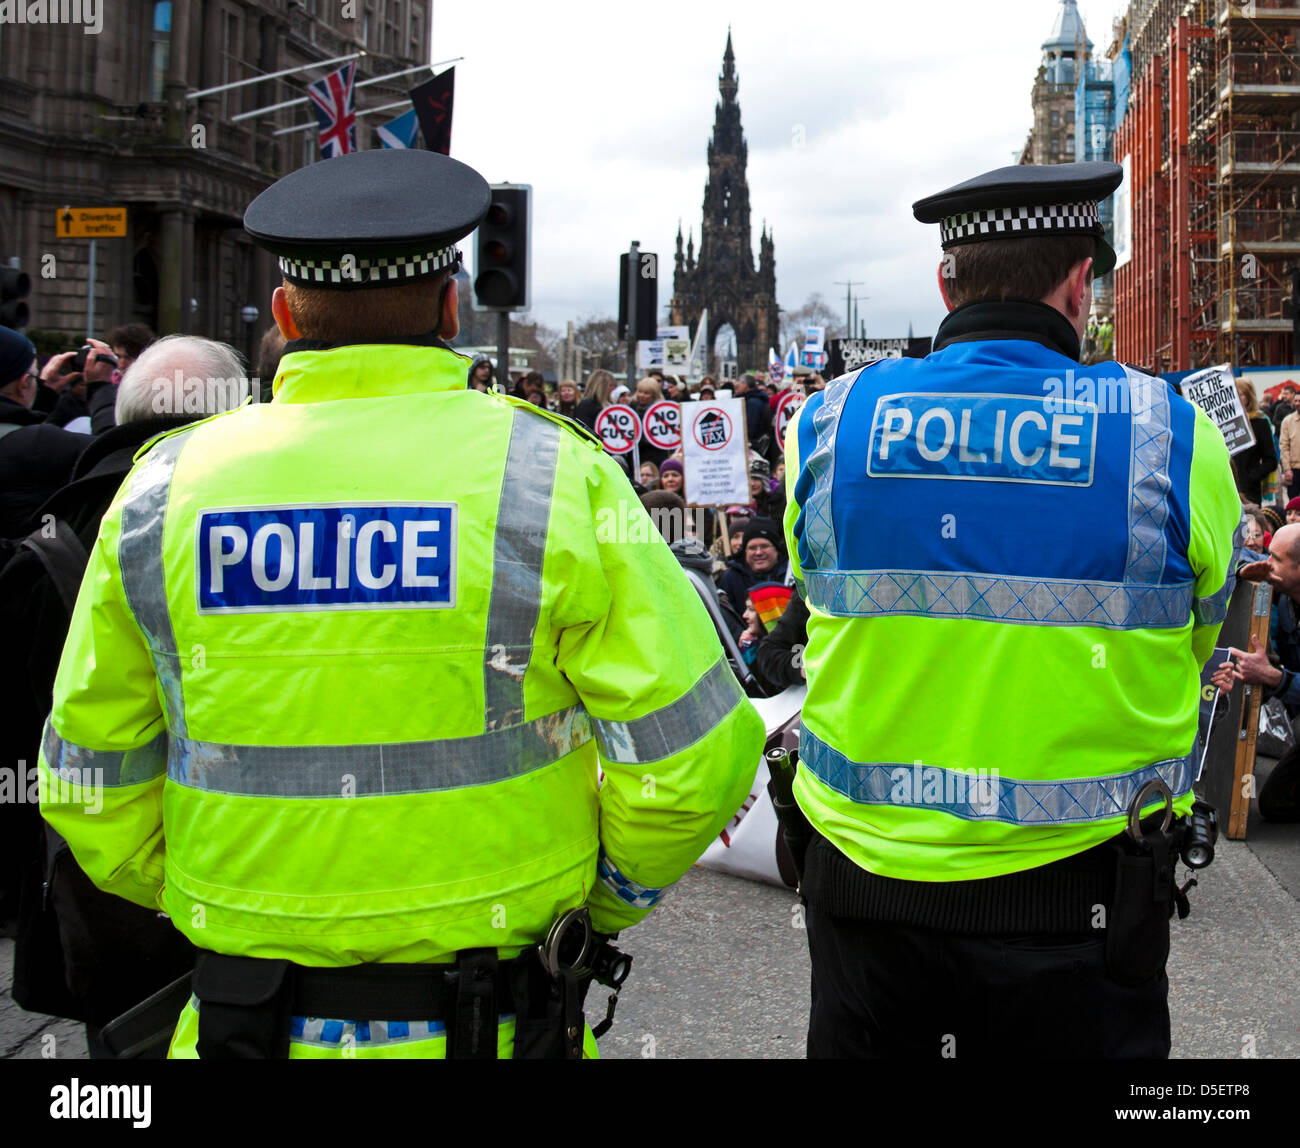 Polizei-Schottland die Polizei des Landes am 1. April 2013 übernehmen wird. Acht schottische Polizeikräfte werden kombiniert. Stockfoto